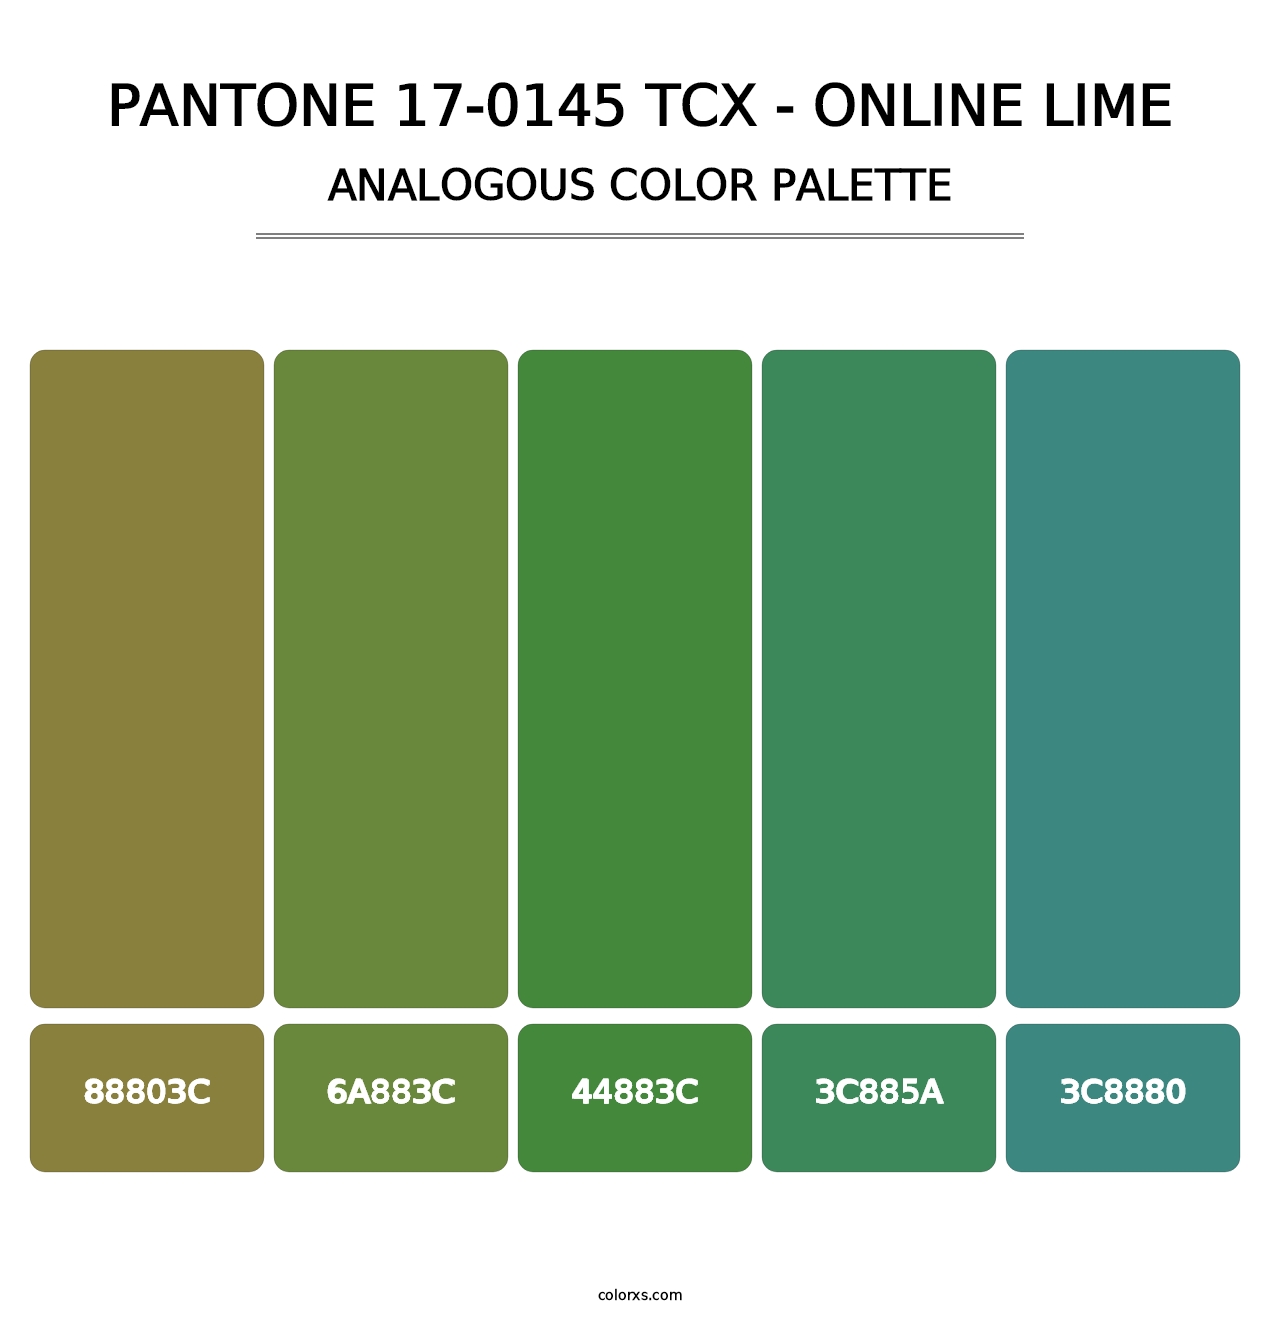 PANTONE 17-0145 TCX - Online Lime - Analogous Color Palette